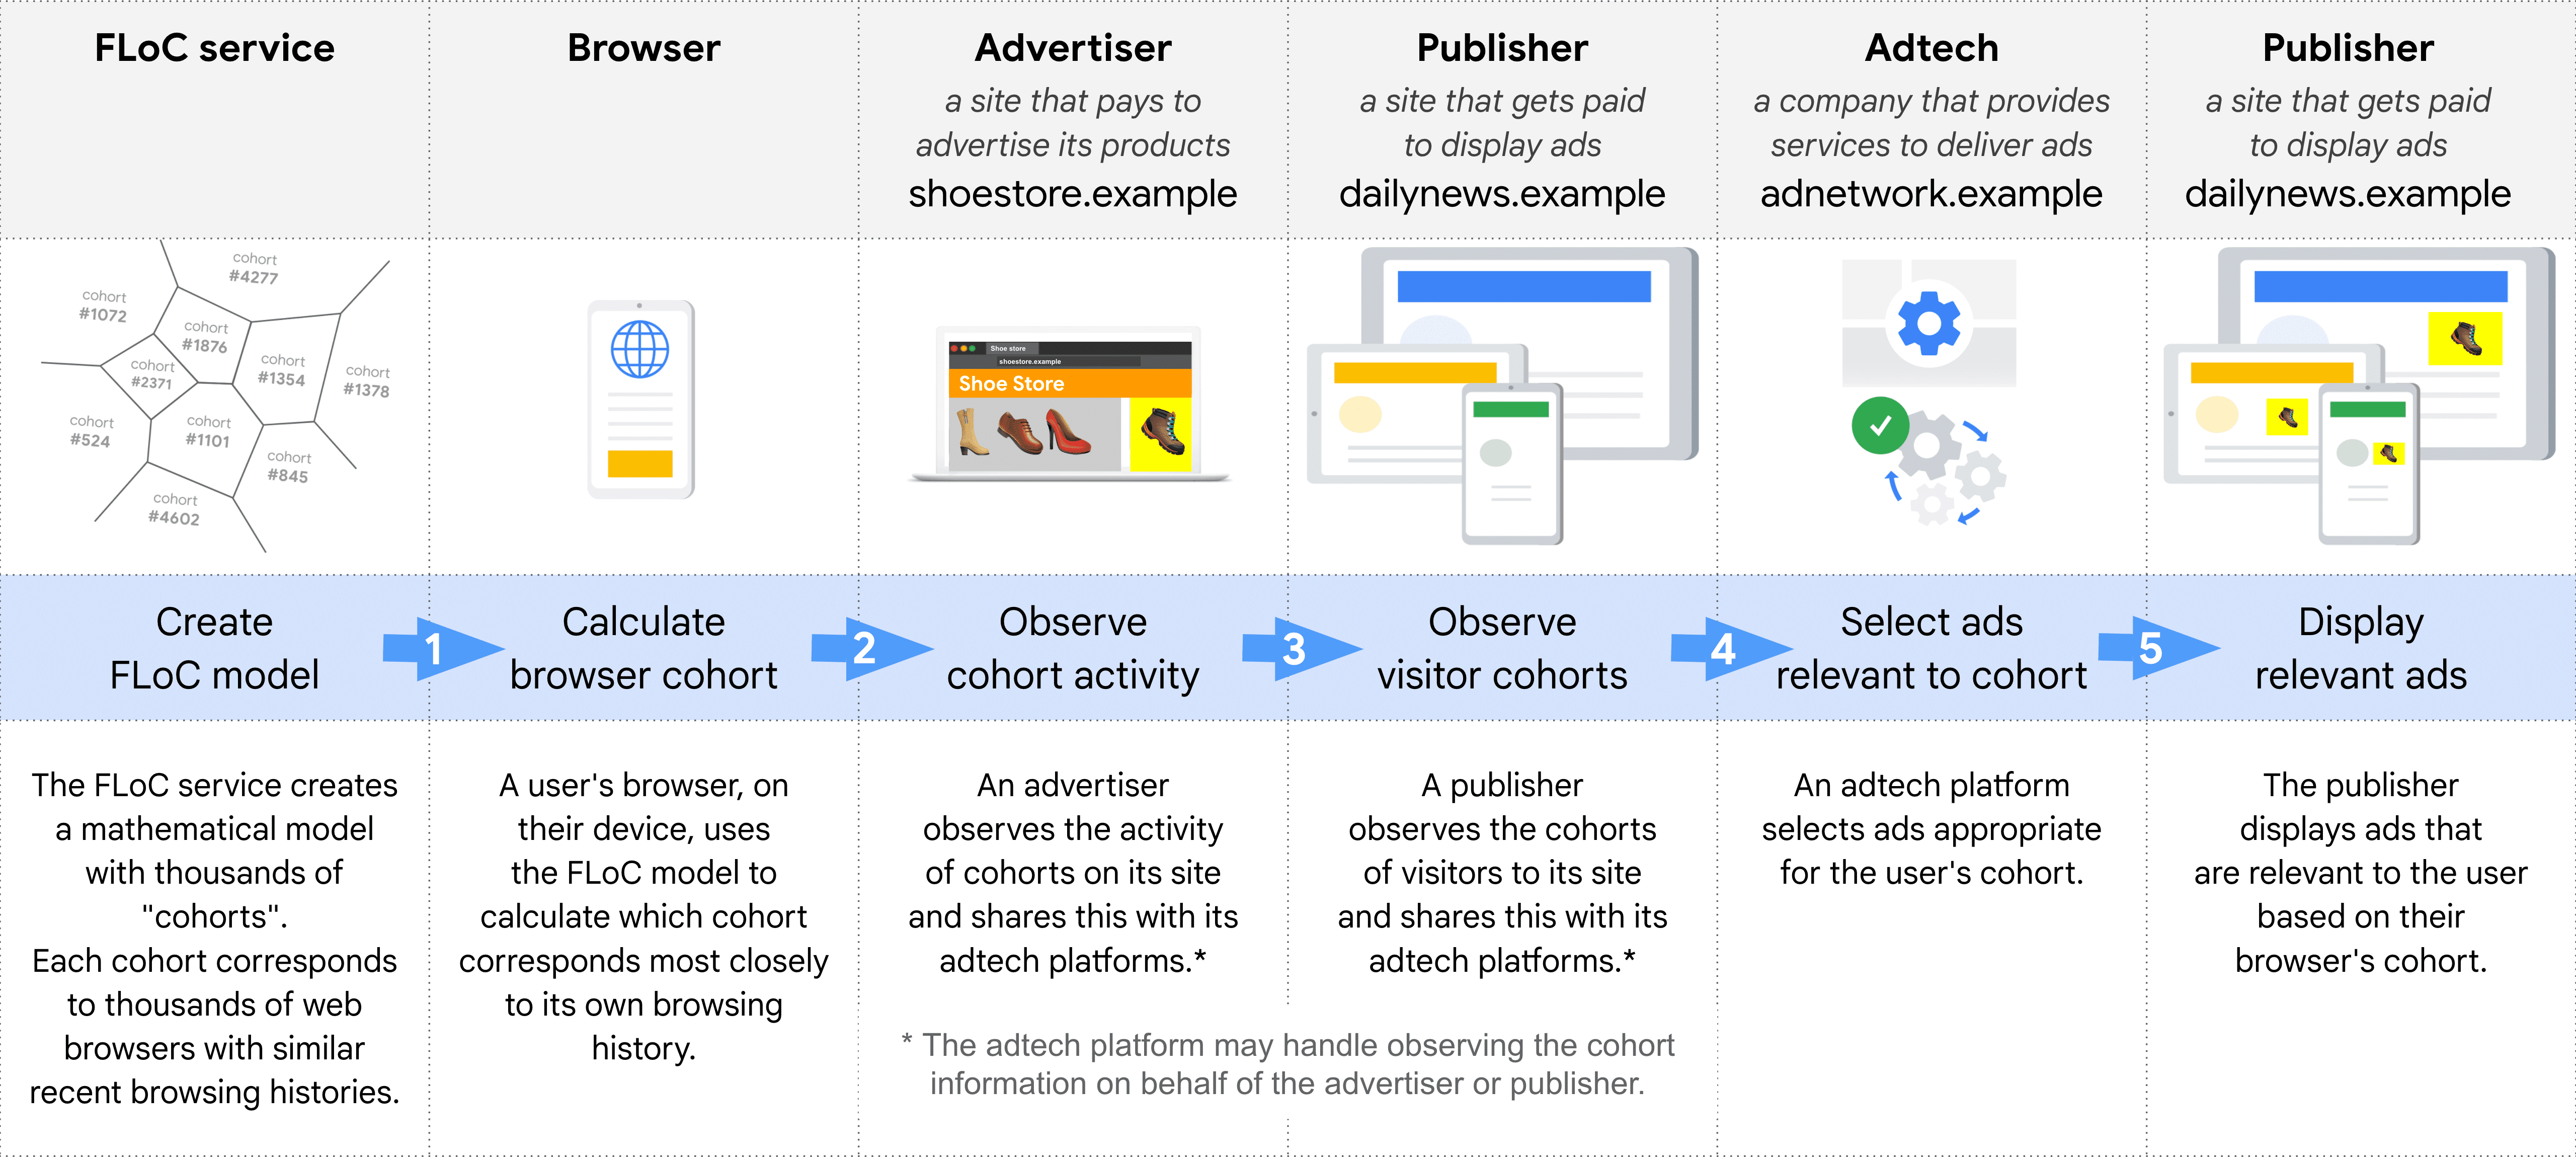 Diagrama que muestra, paso a paso, las diferentes funciones para seleccionar y publicar un anuncio con FLoC: servicio de FLoC, navegador, anunciantes, publicador (para observar cohortes), AdTech y publicador (para mostrar anuncios)